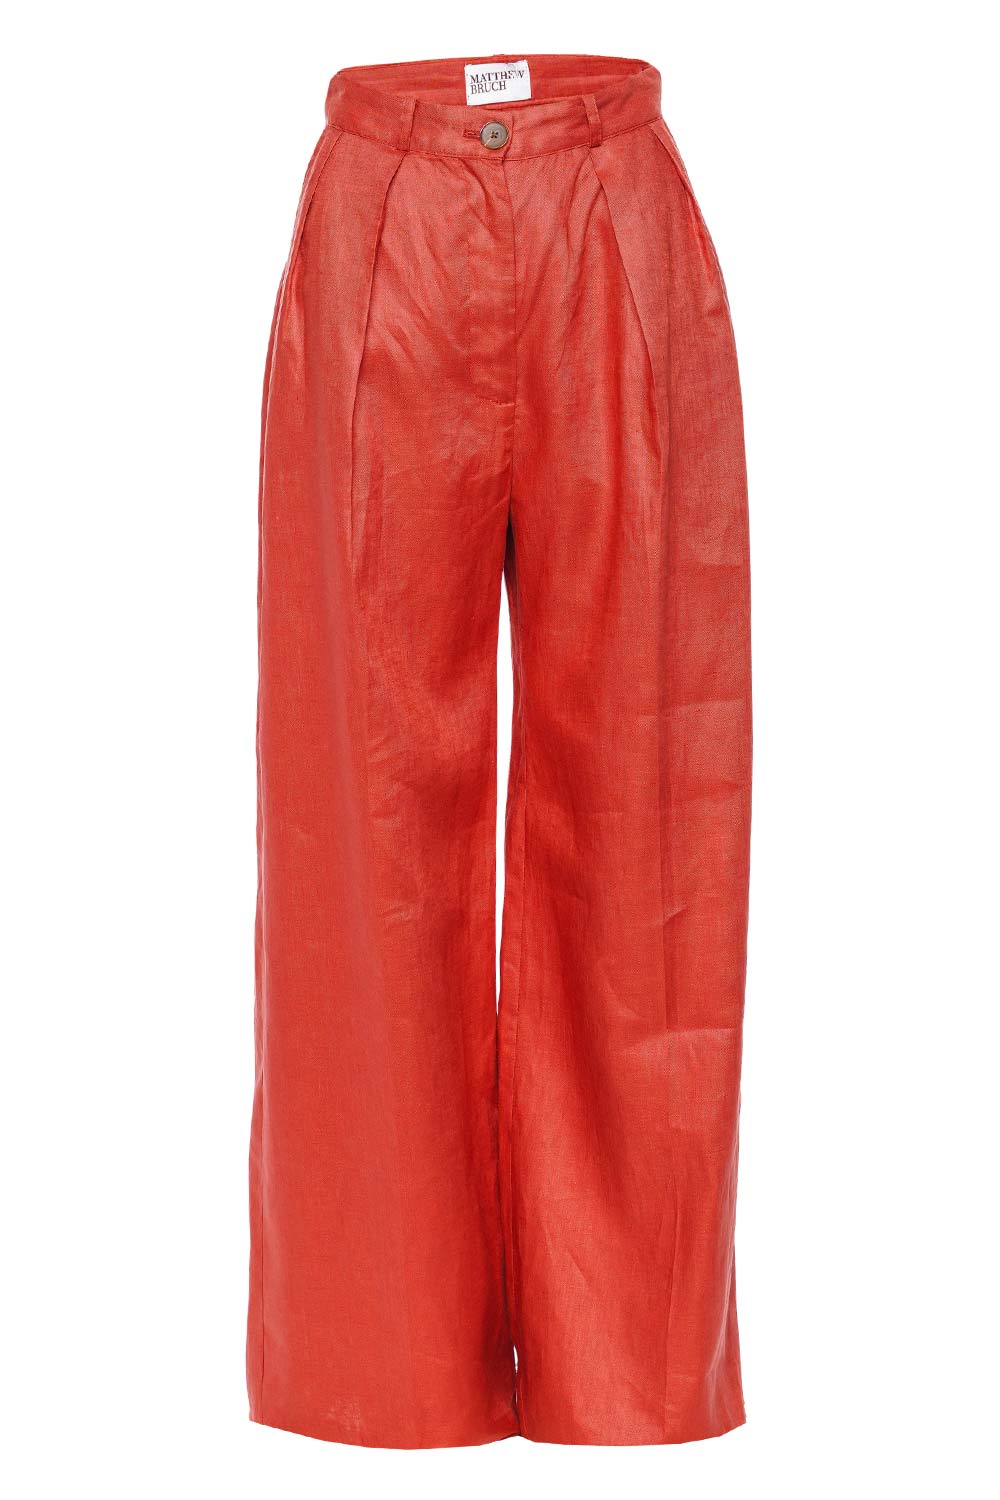 Matthew Bruch Terracotta Linen Button Pleated Trouser